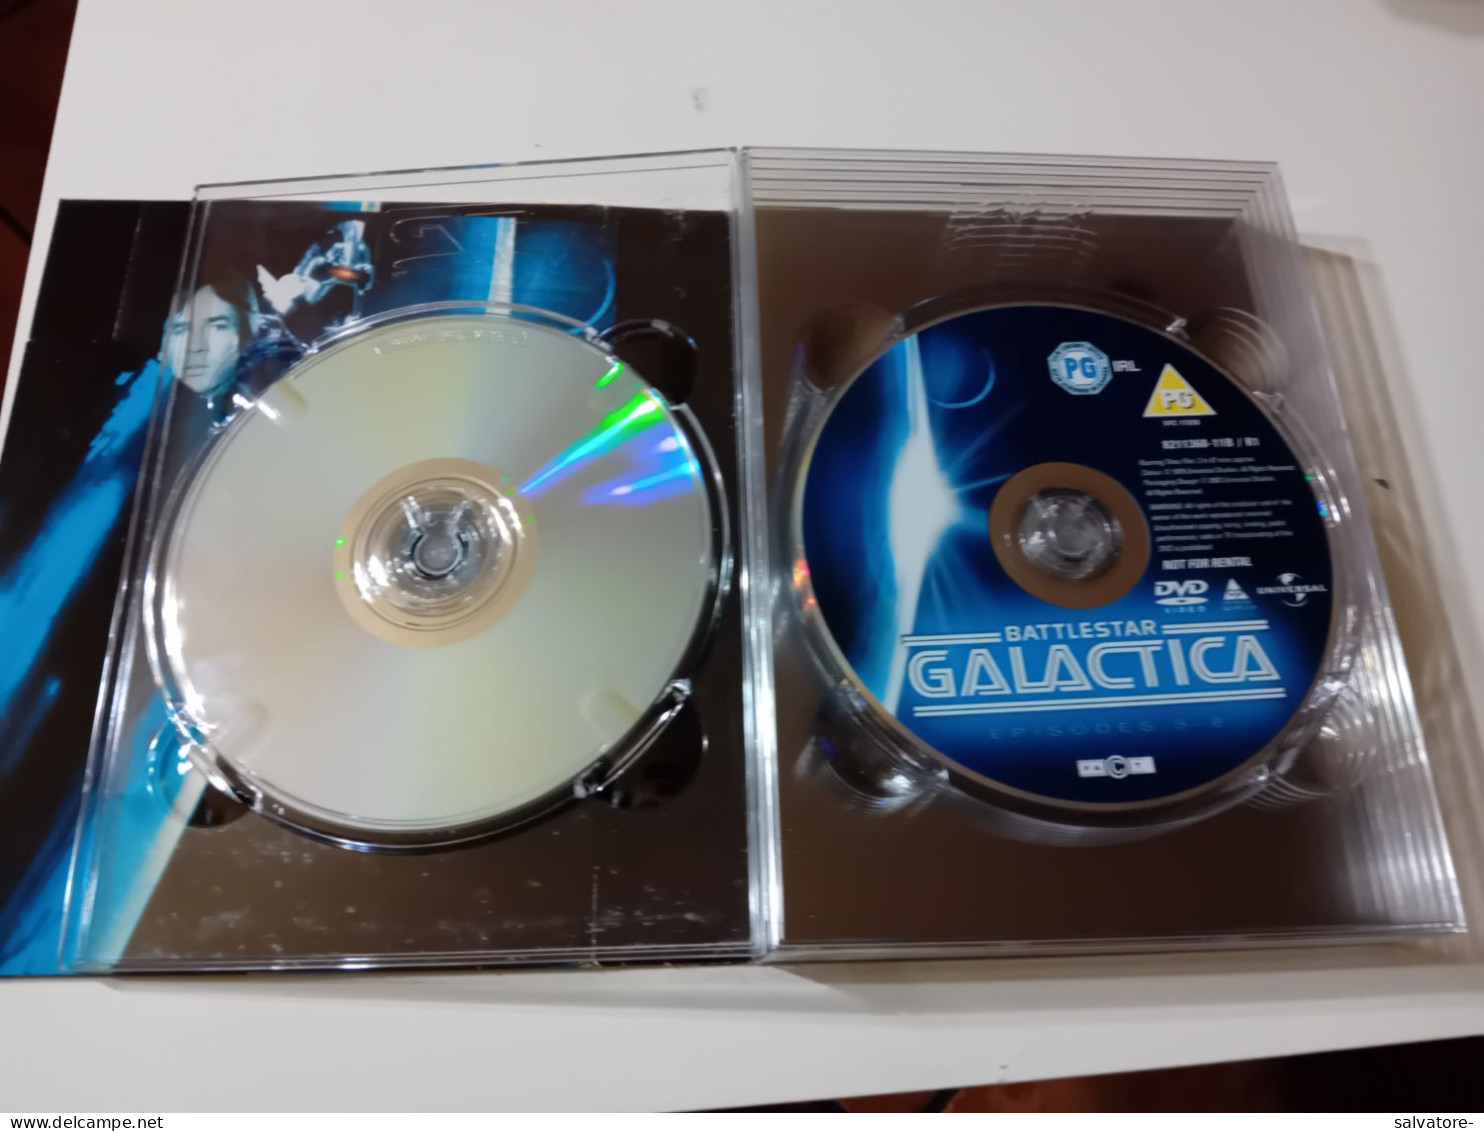 COVER CON 7 DVD BATTLESTAR GALACTICA - Ciencia Ficción Y Fantasía